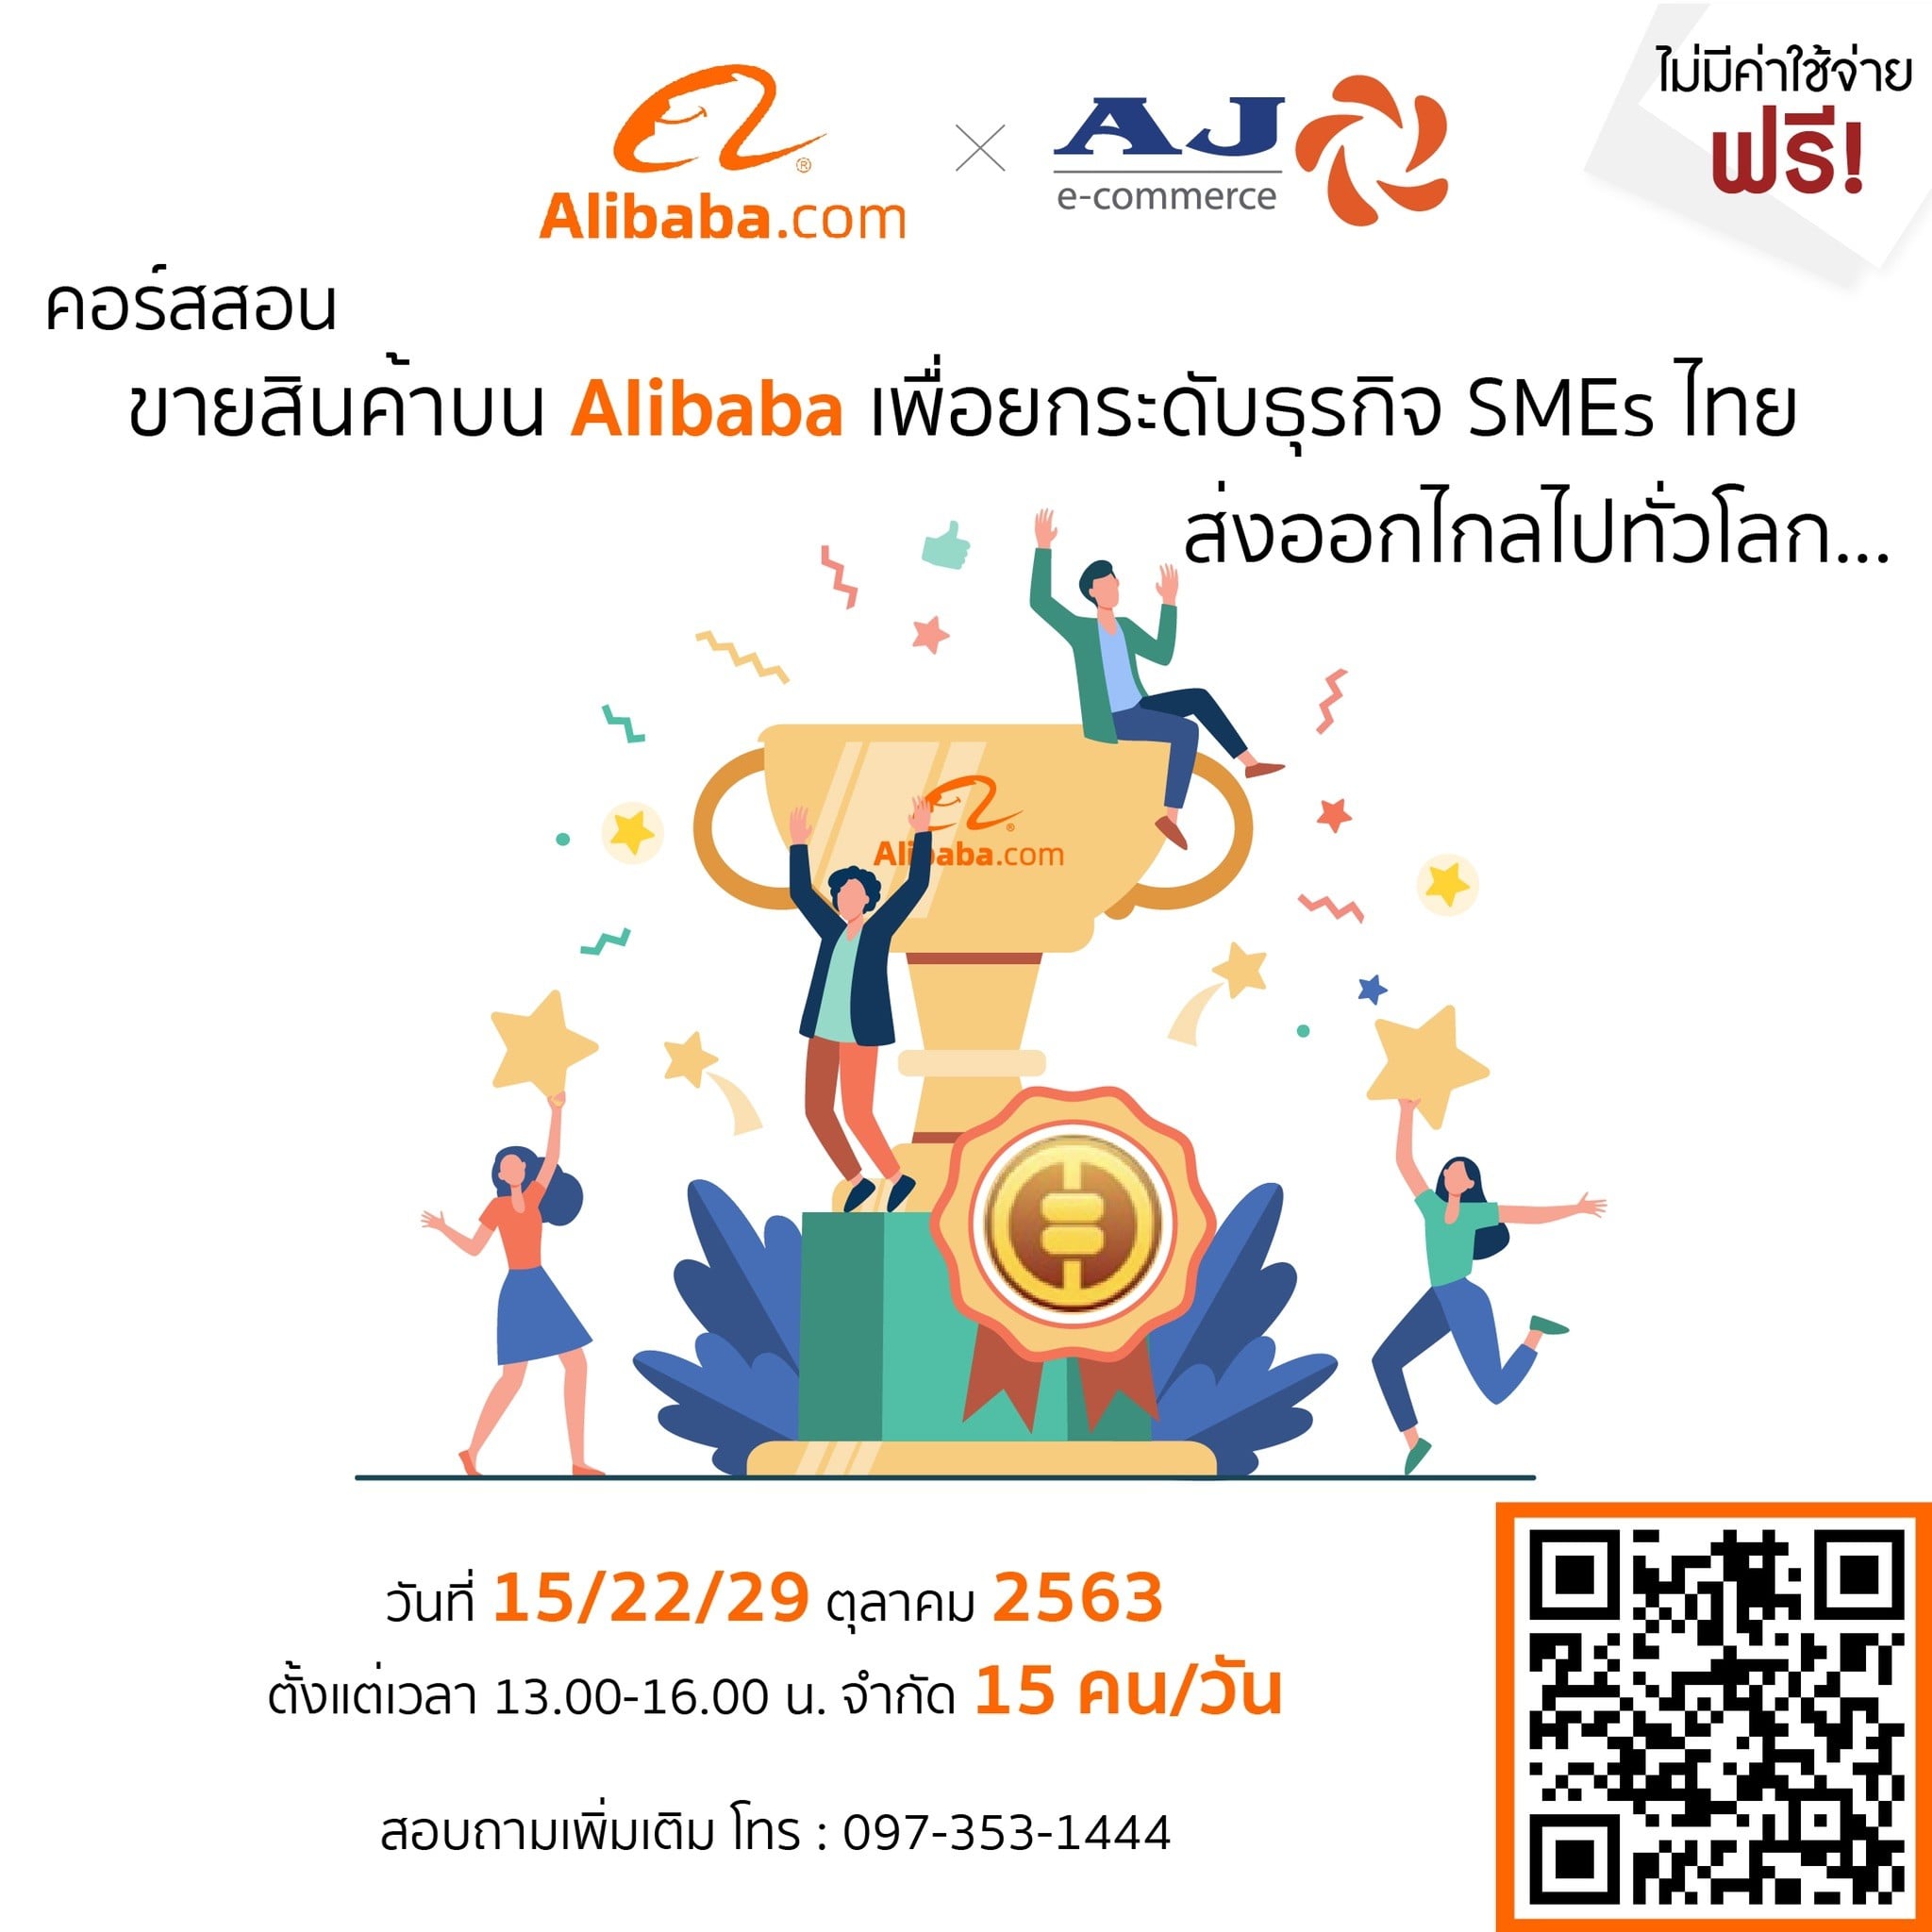 AJA จัดอบรม สอนขายสินค้าบน Alibaba เพื่อยกระดับธุรกิจ SMEs ไทย ส่งออกไกลไปทั่วโลก ฟรี!